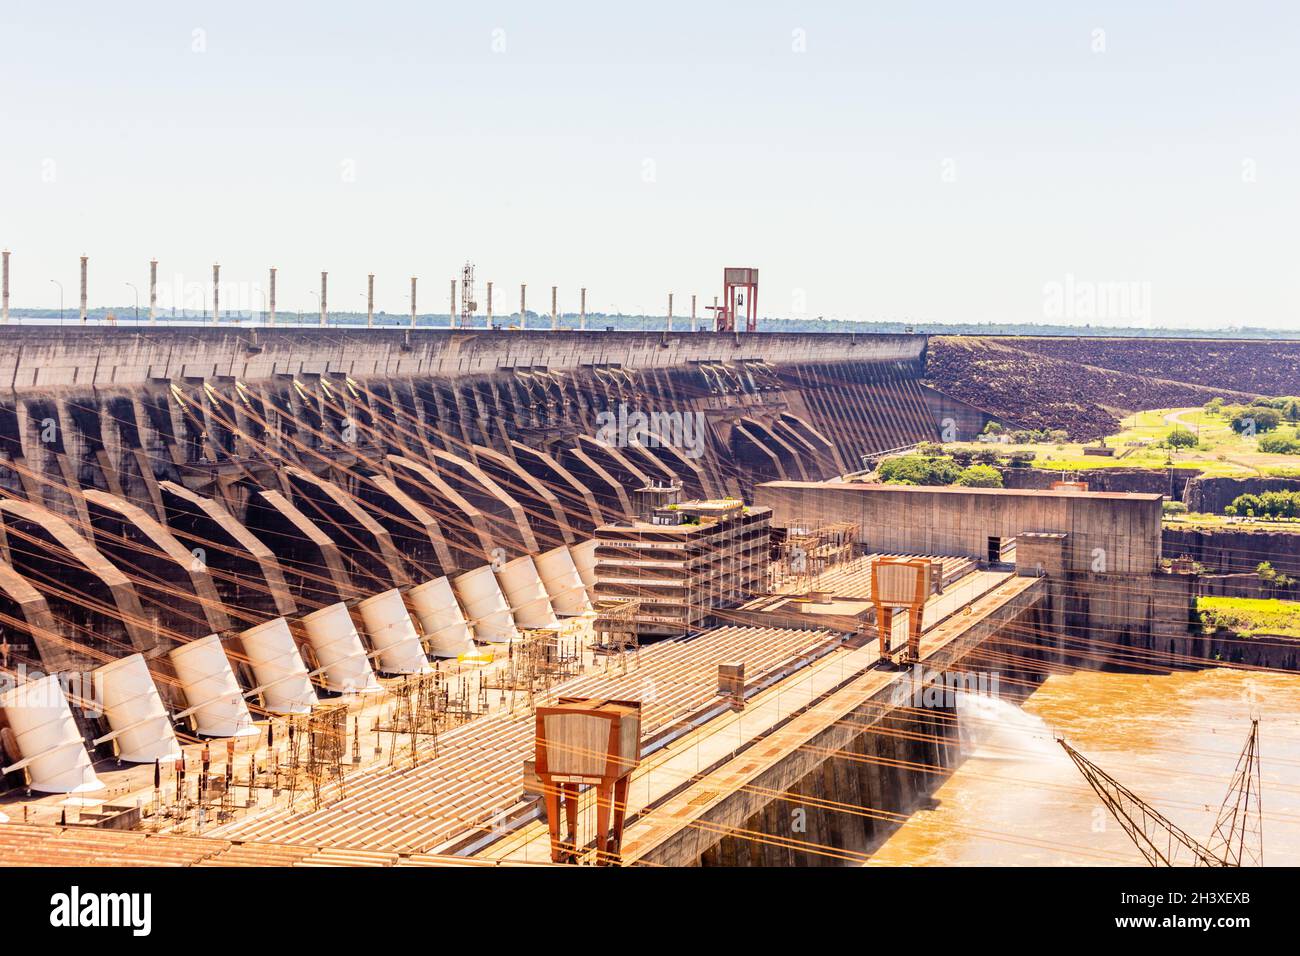 Le plus grand barrage hydroélectrique d'Itaipu au monde sur le fleuve Parana situé à la frontière entre le Brésil et le Paraguay Banque D'Images